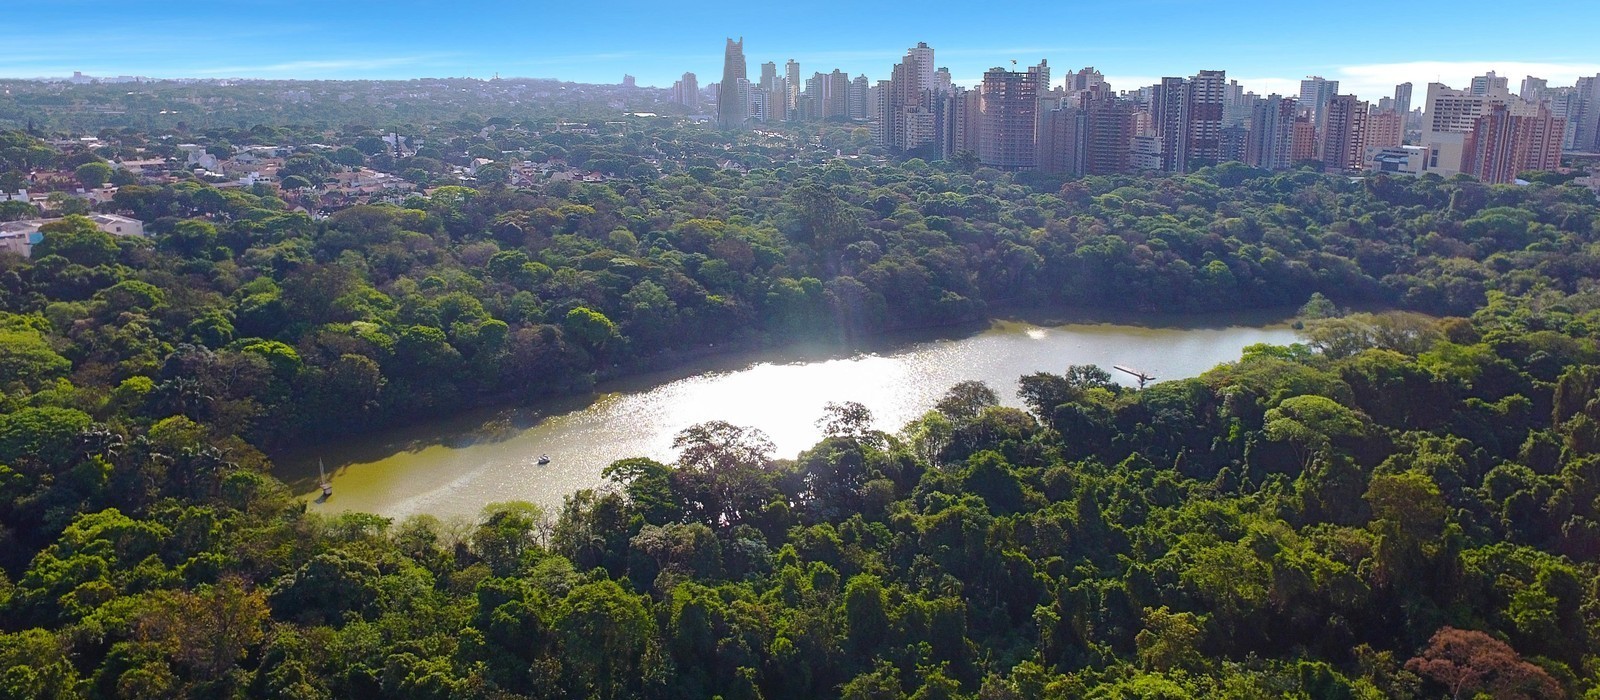 Gerente do Parque do Ingá é multado em R$ 165 mil pelo próprio município